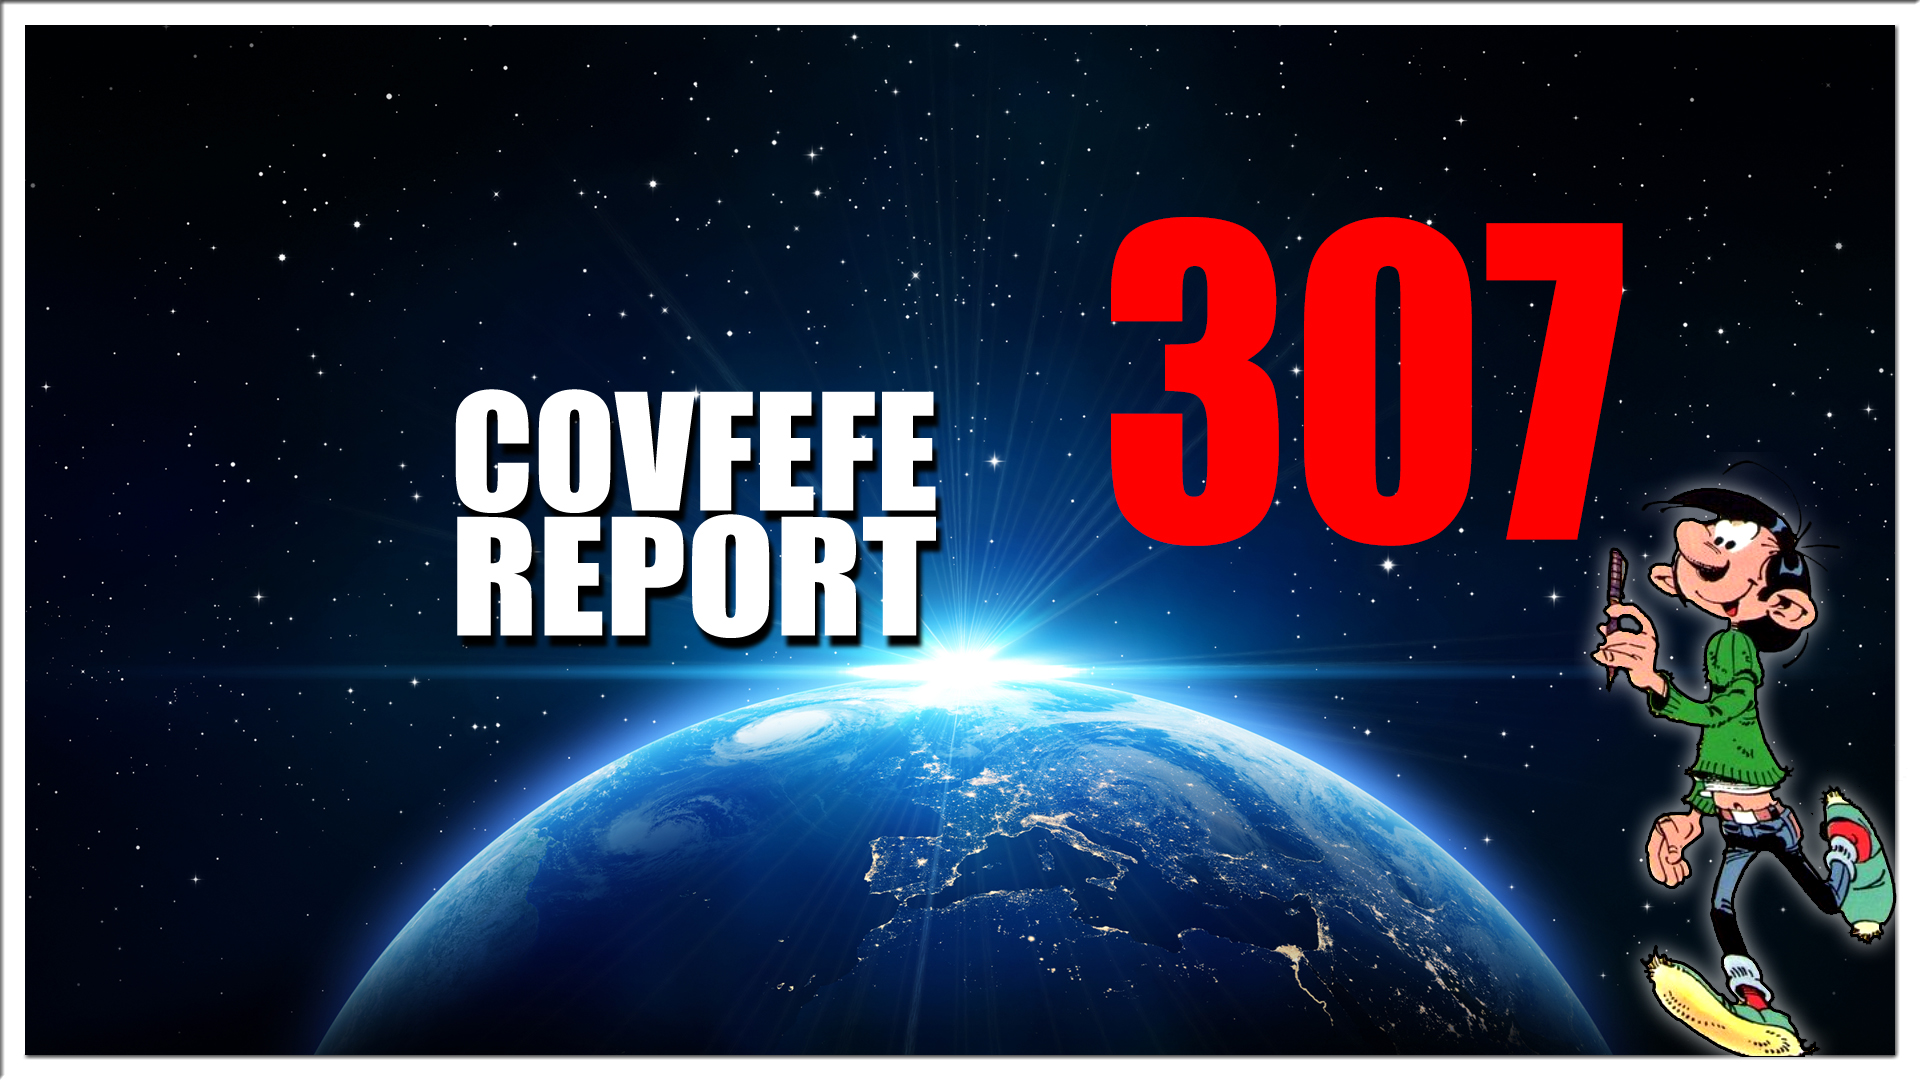 Covfefe Report 307. Everything has meaning, Trump kan weer Rally'en, 80 helden opgepakt, Cocaïne